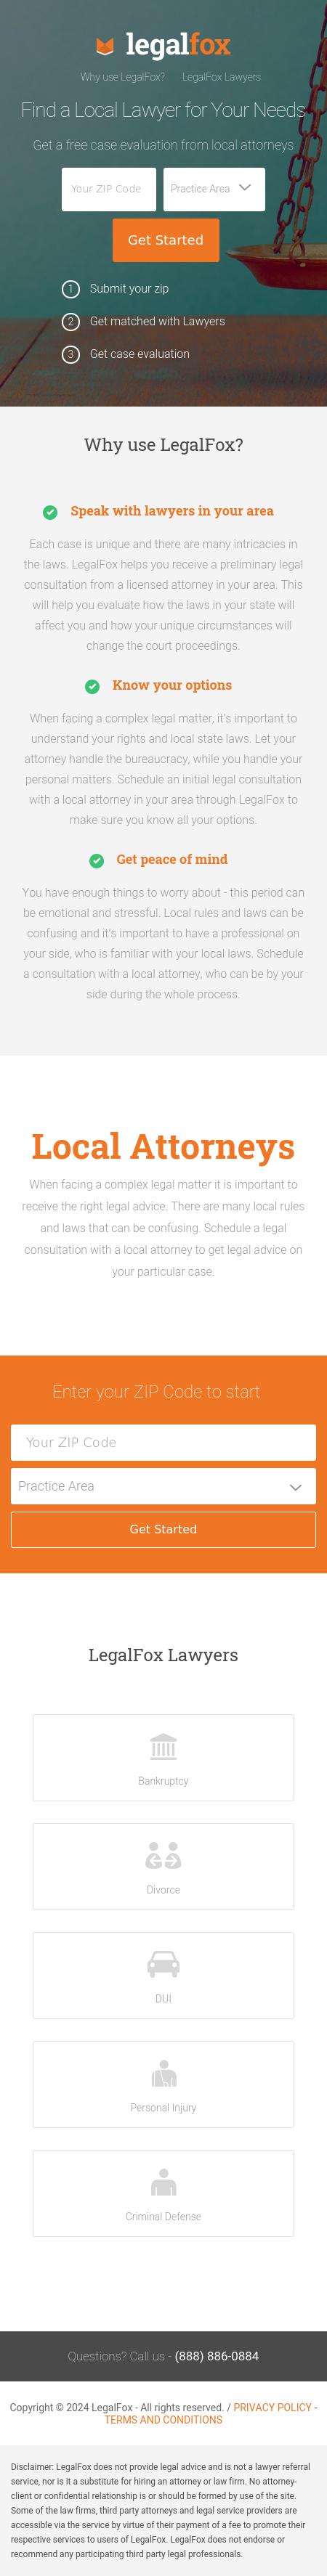 Find a Local Attorney - Wichita Falls TX Lawyers